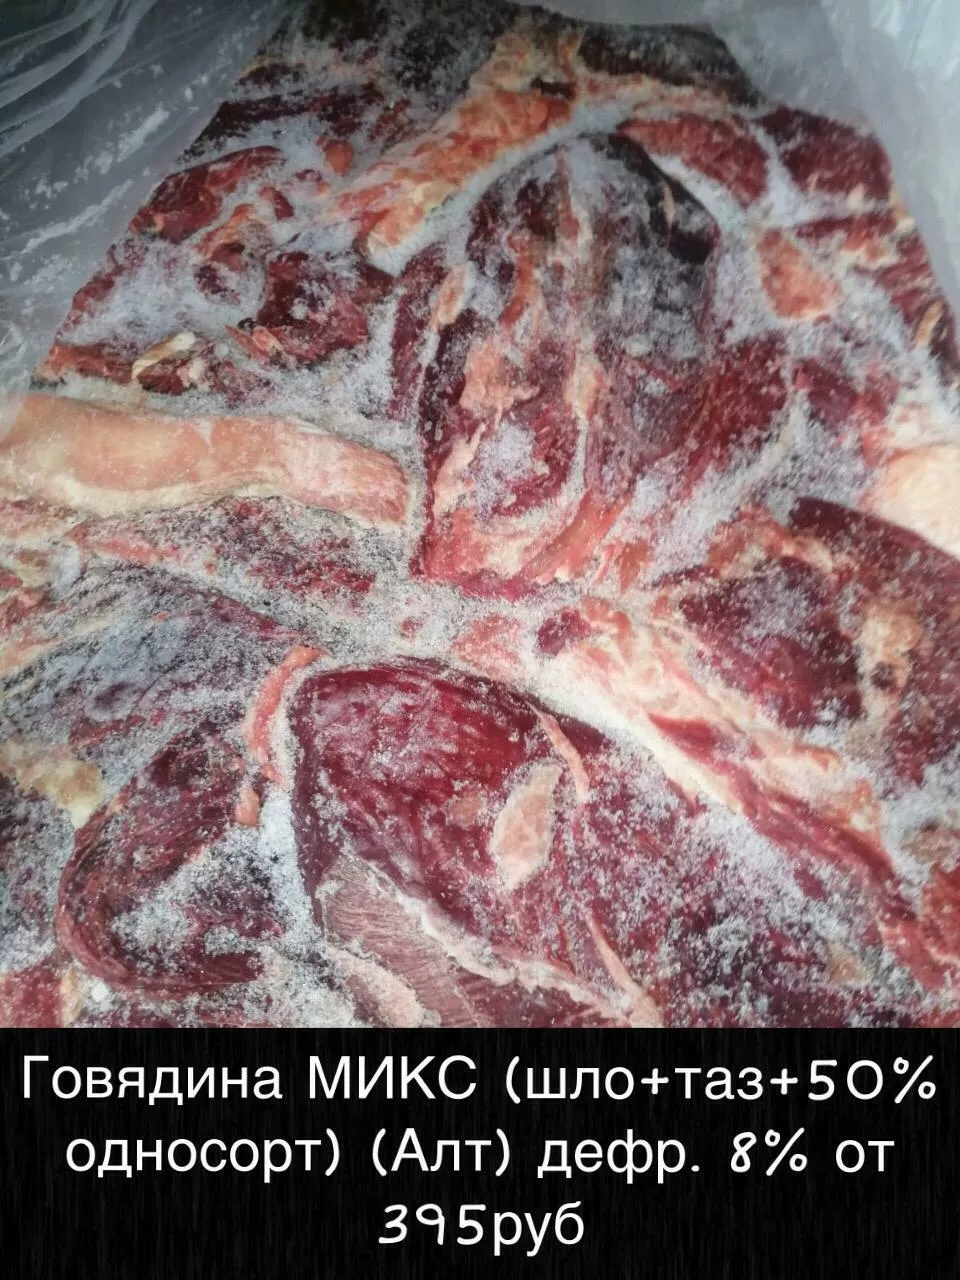 мясо - говядина и др. оптом в Железногорске-Илимском 6